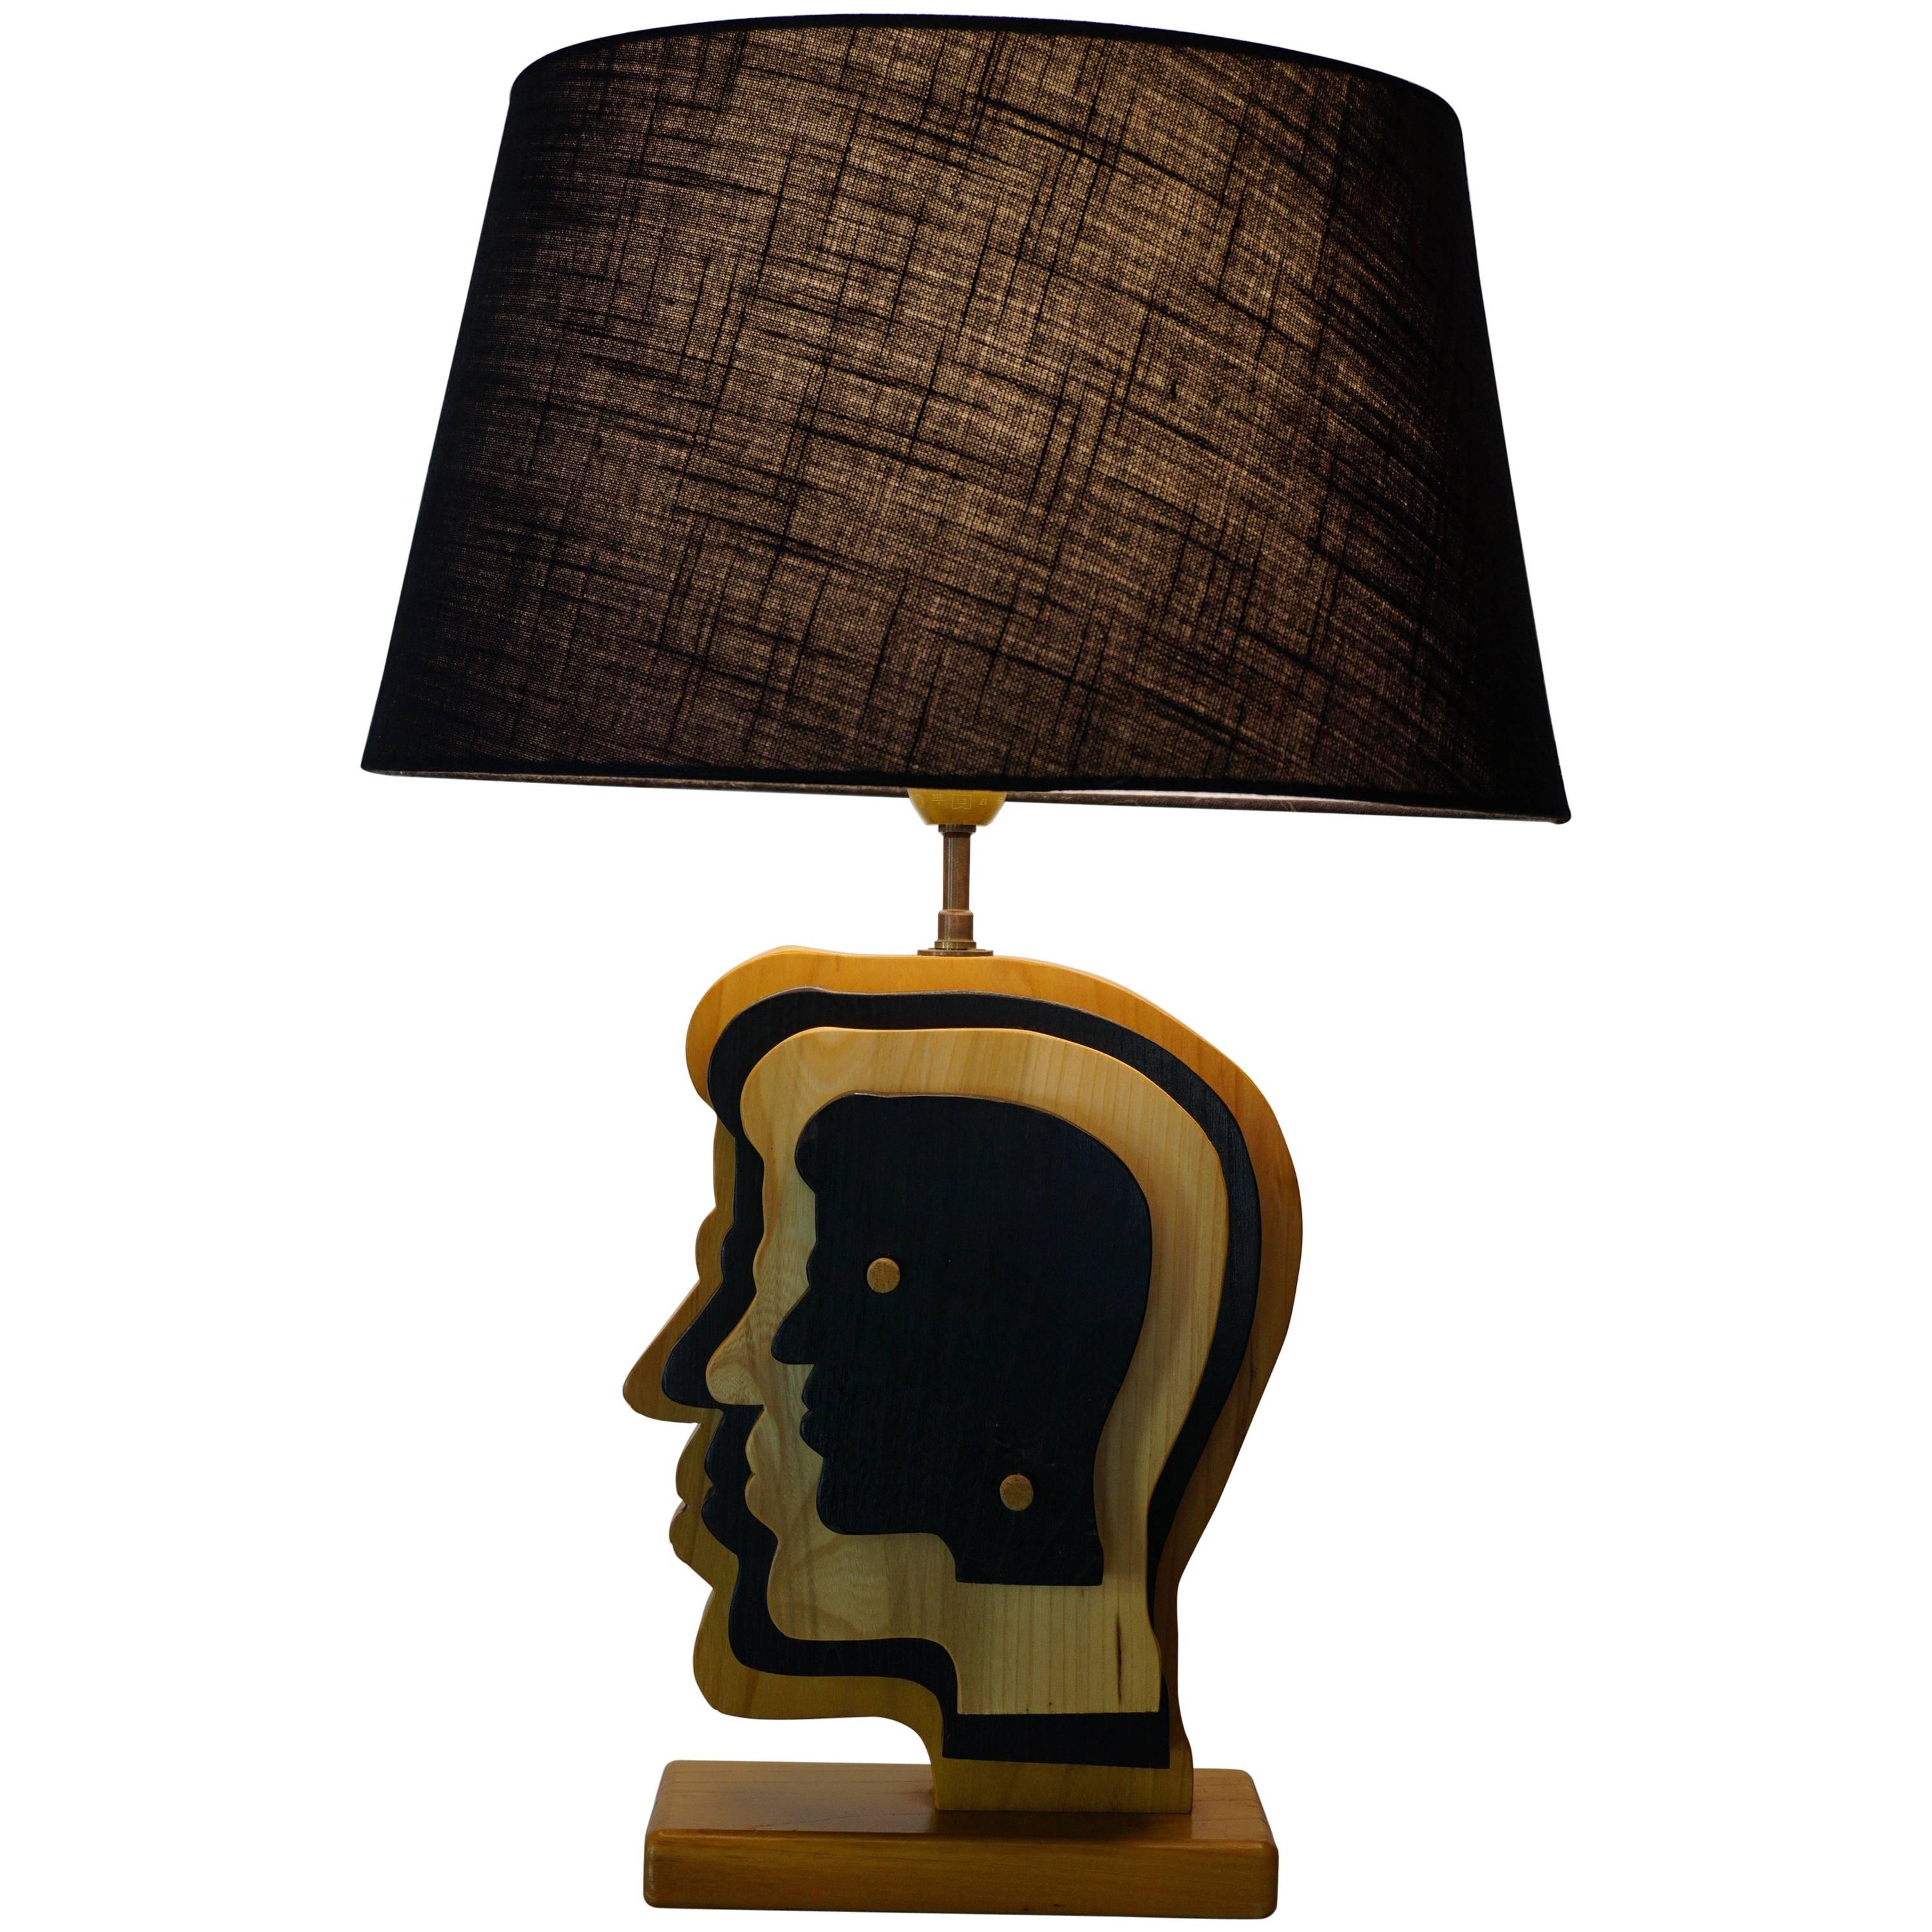 Holzlampe mit niederländischem Design und Lampenfront